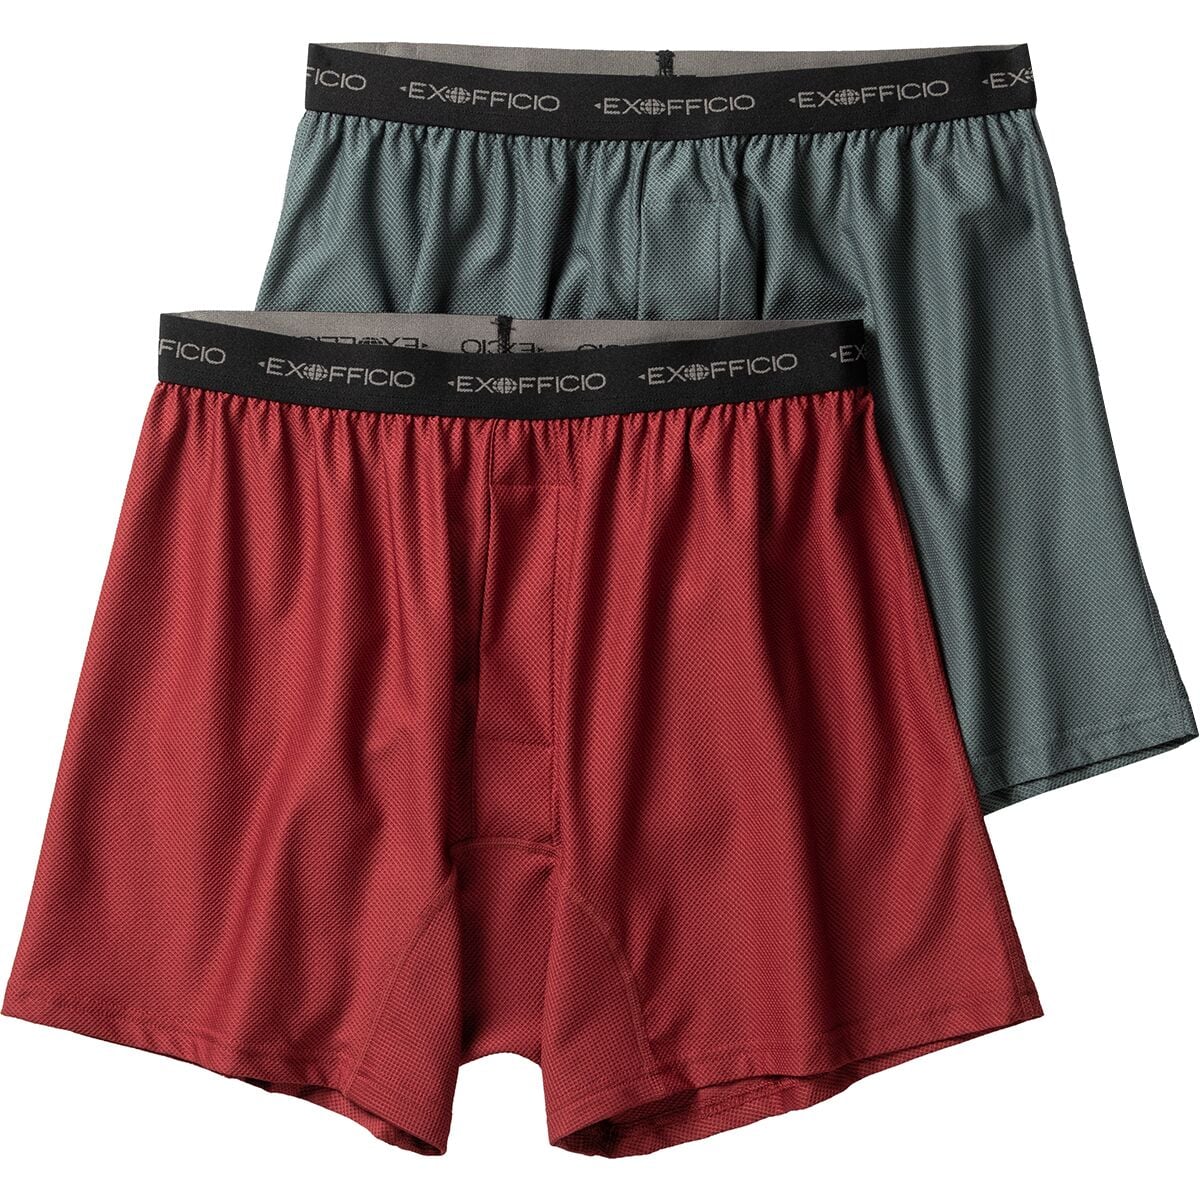 Men's Underwear - Boxer Shorts & Briefs